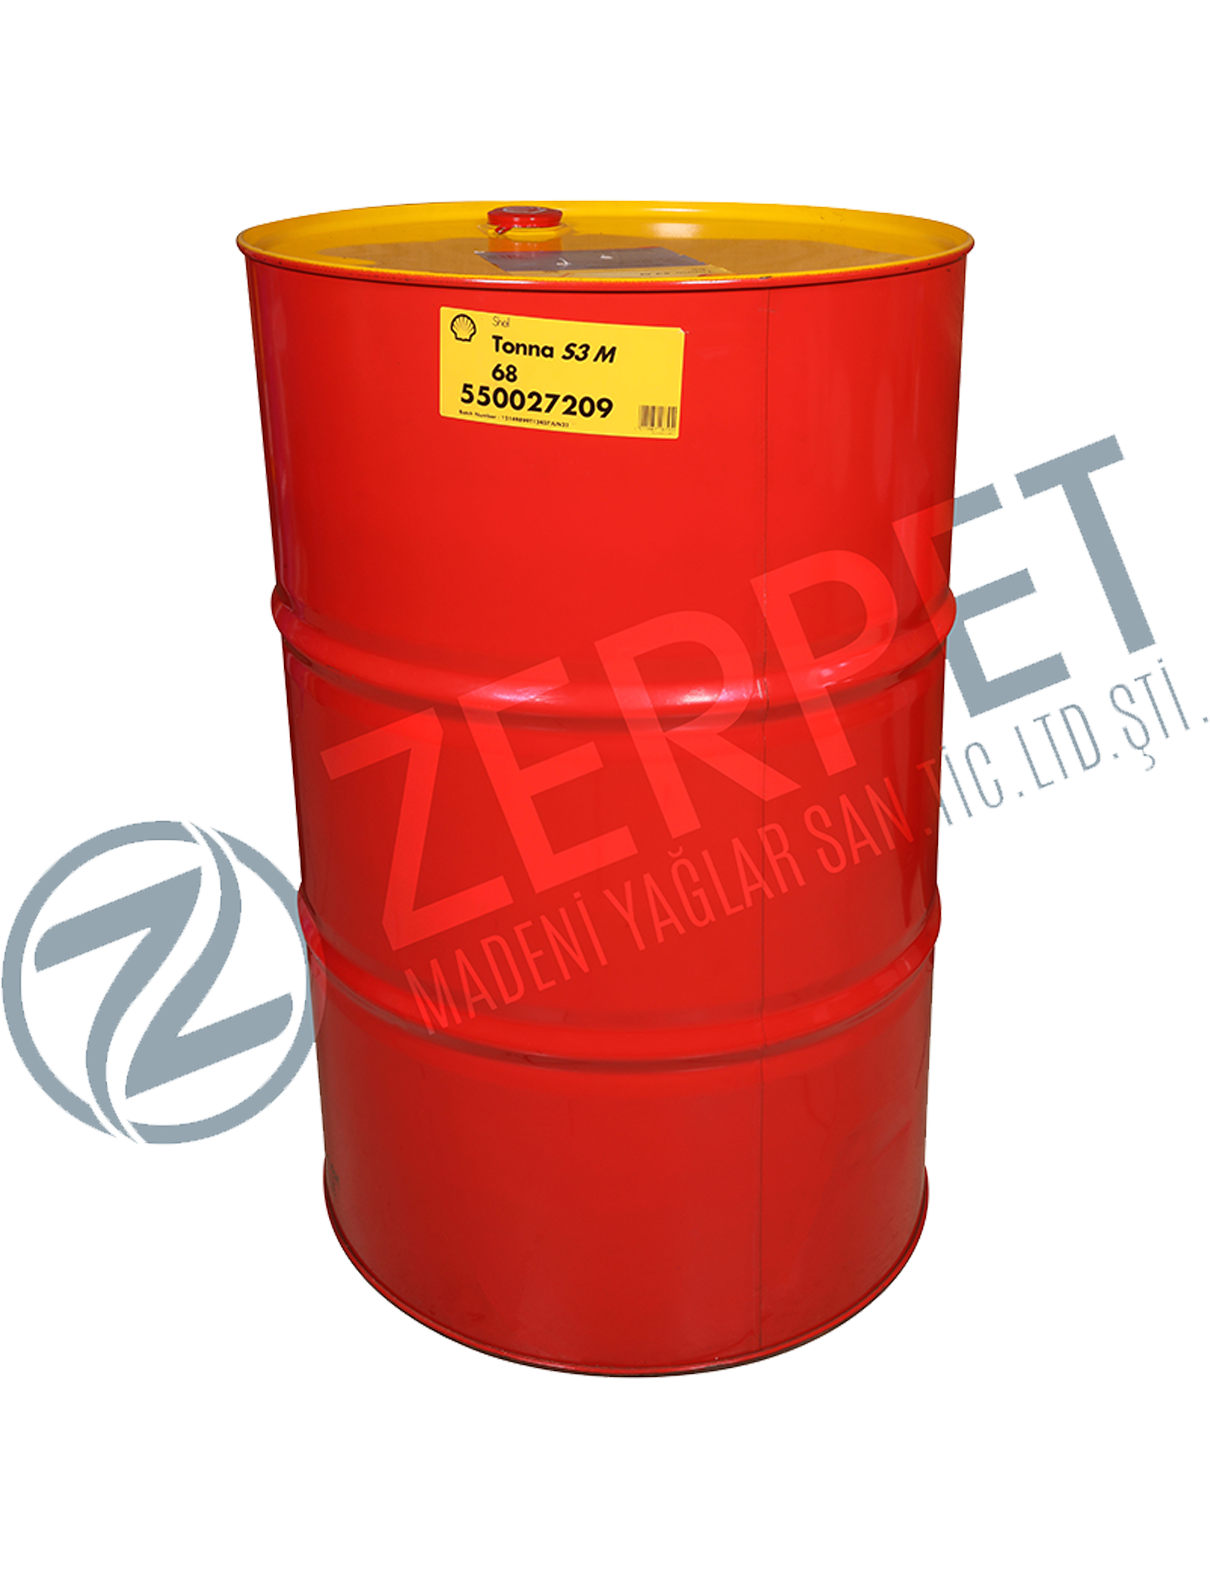 Zerpet | Shell Tonna S3 M 68 Kızak Yağı 15 Lt